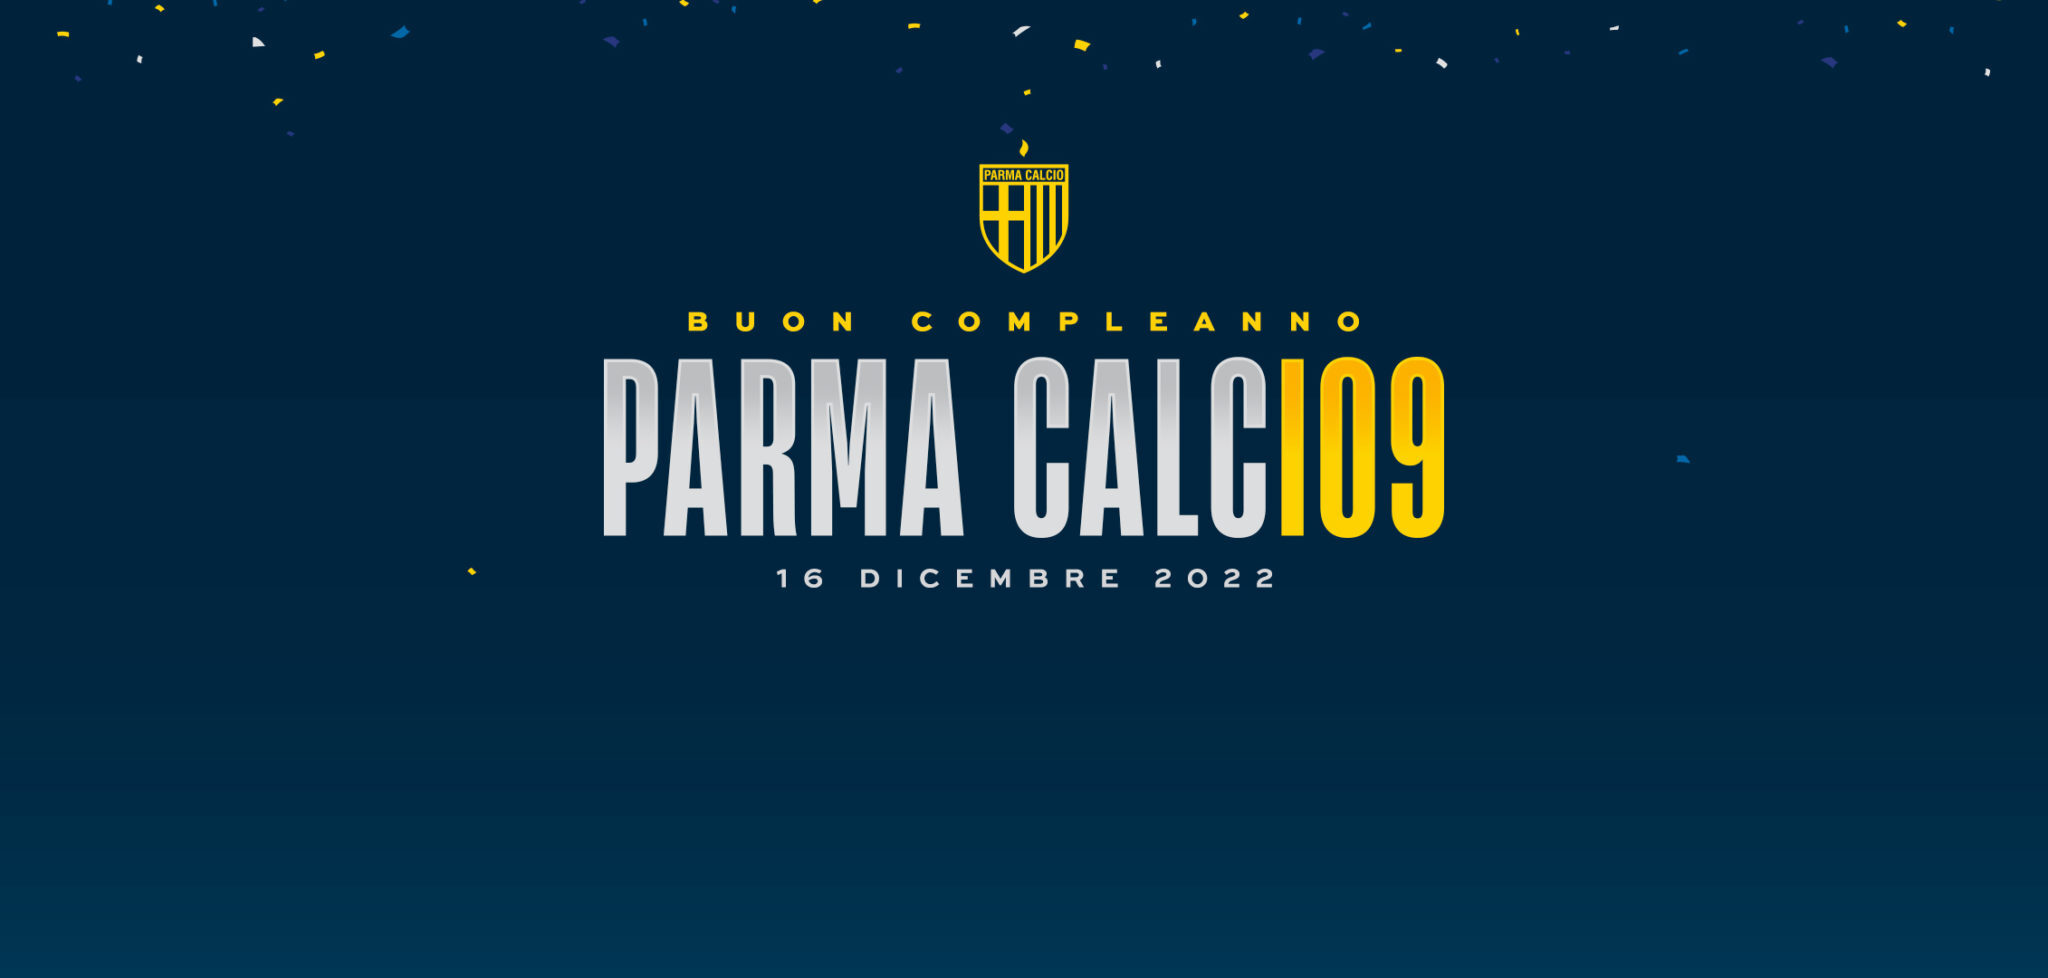 109° COMPLEANNO DEL PARMA CALCIO